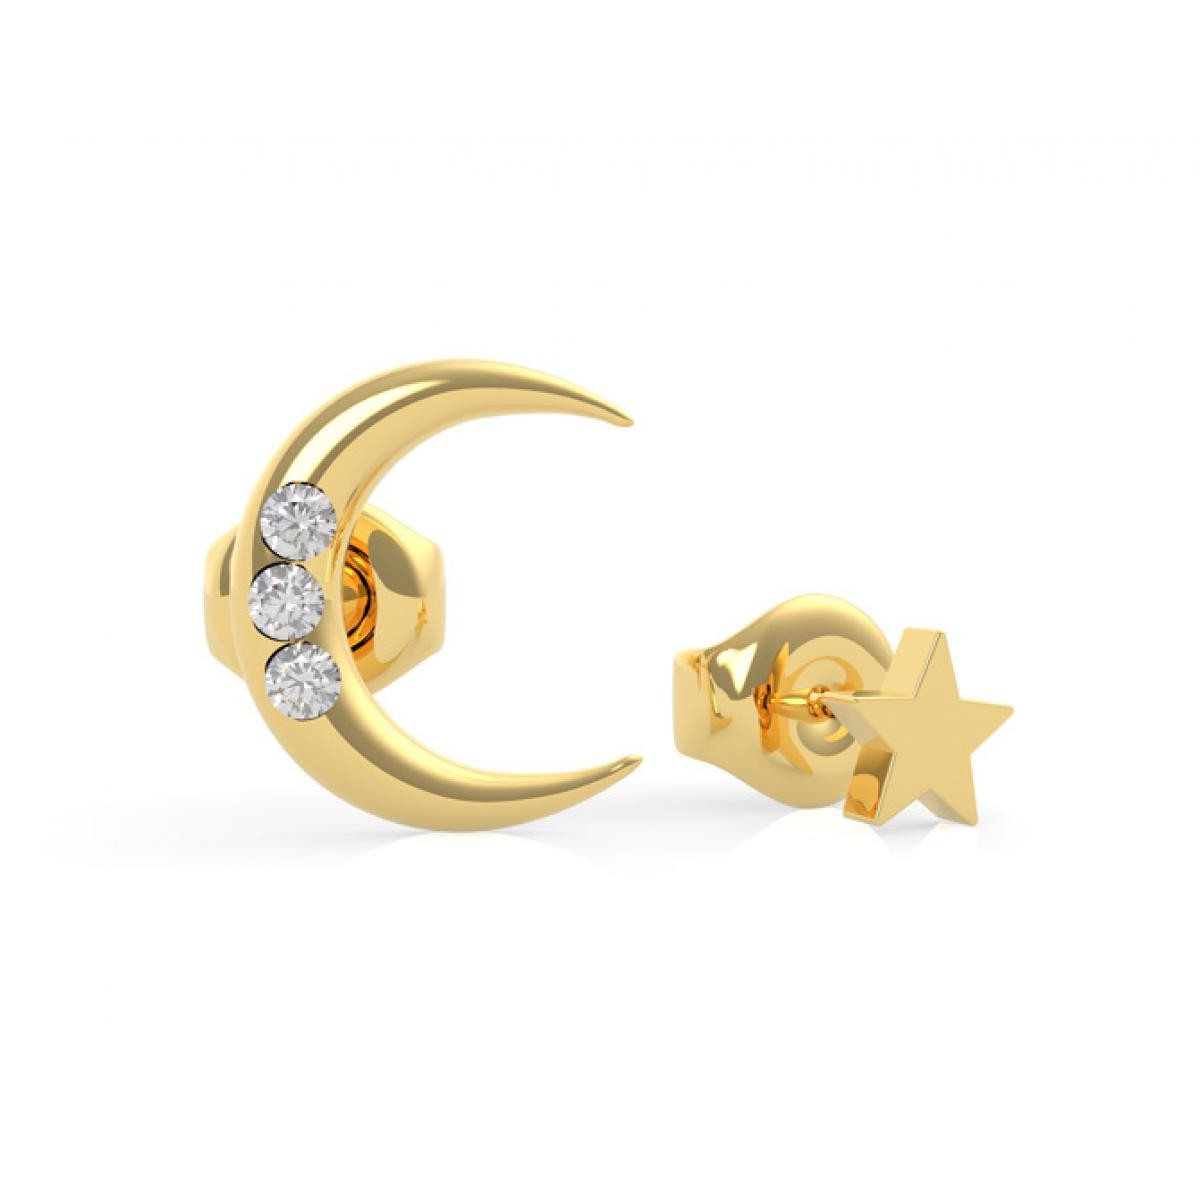 Promo : Boucles d'Oreilles Guess GET LUCKY UBE29010 - puces dépareillées acier doré lune et étoile